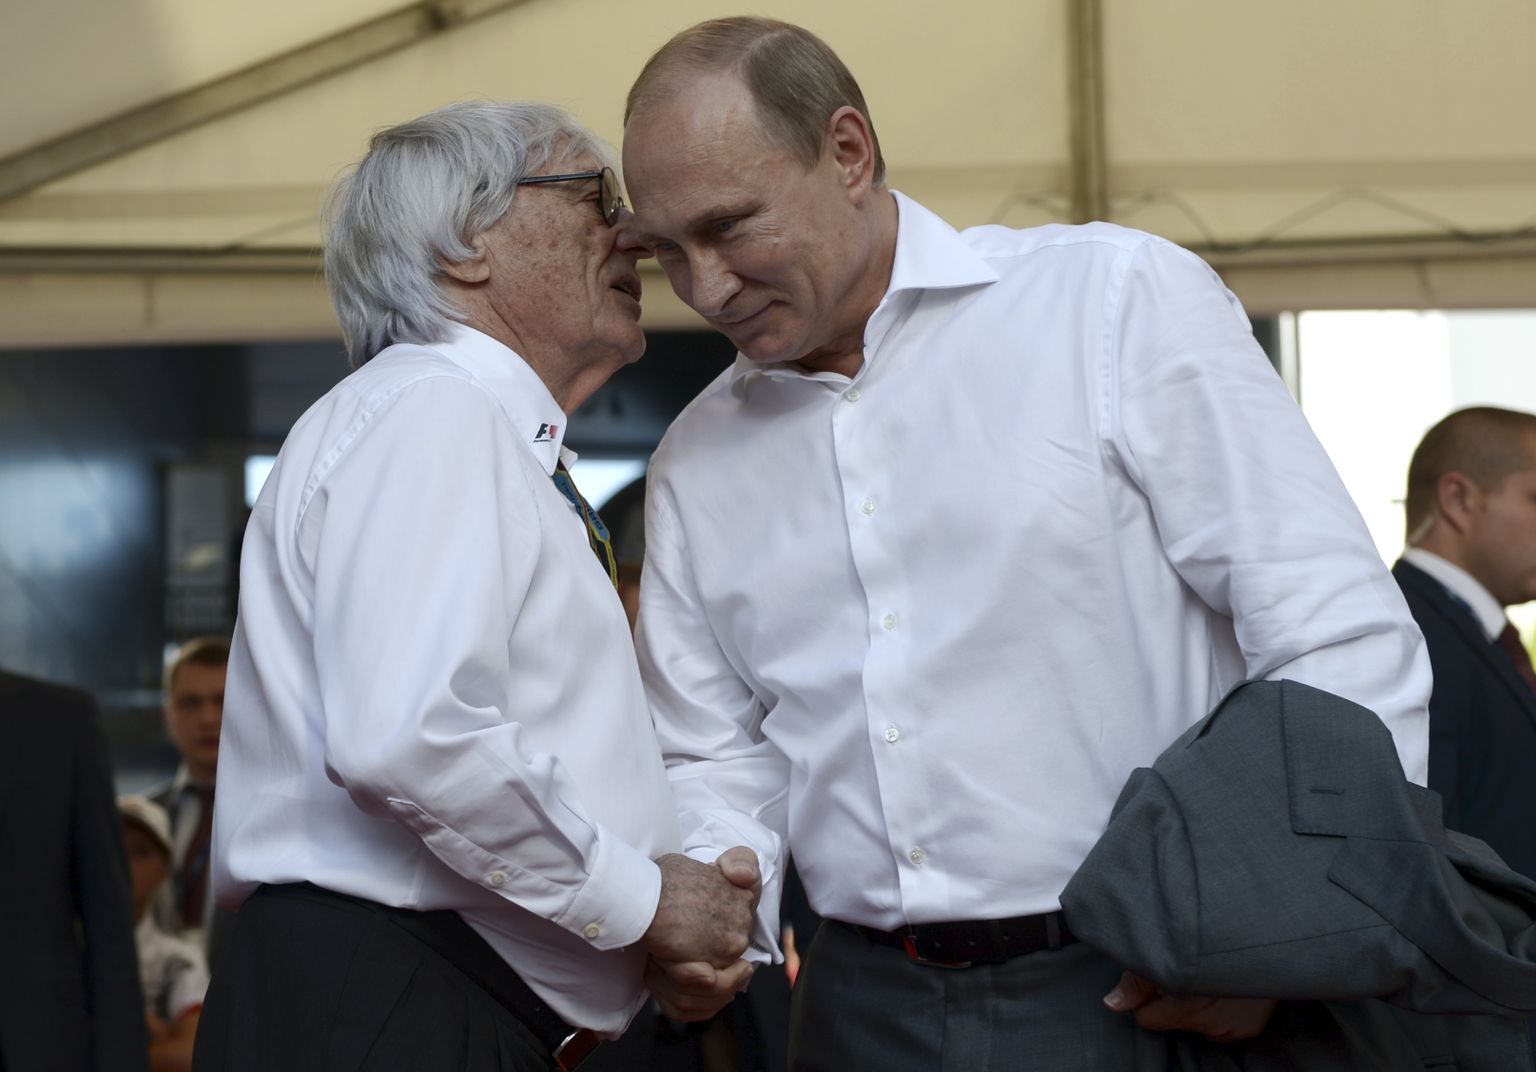 Vormel-1 sarja juht Bernie Ecclestone (vasakul) surumas 12. oktoobril 2014 Venemaal Sotšis vormel-1 osavõistlusel Vene presidendi Vladimir Putini kätt. Ecclestone sõnas nüüd, et Putin on suurepärane inimene, kelle eest on ta valmis kuuli saama